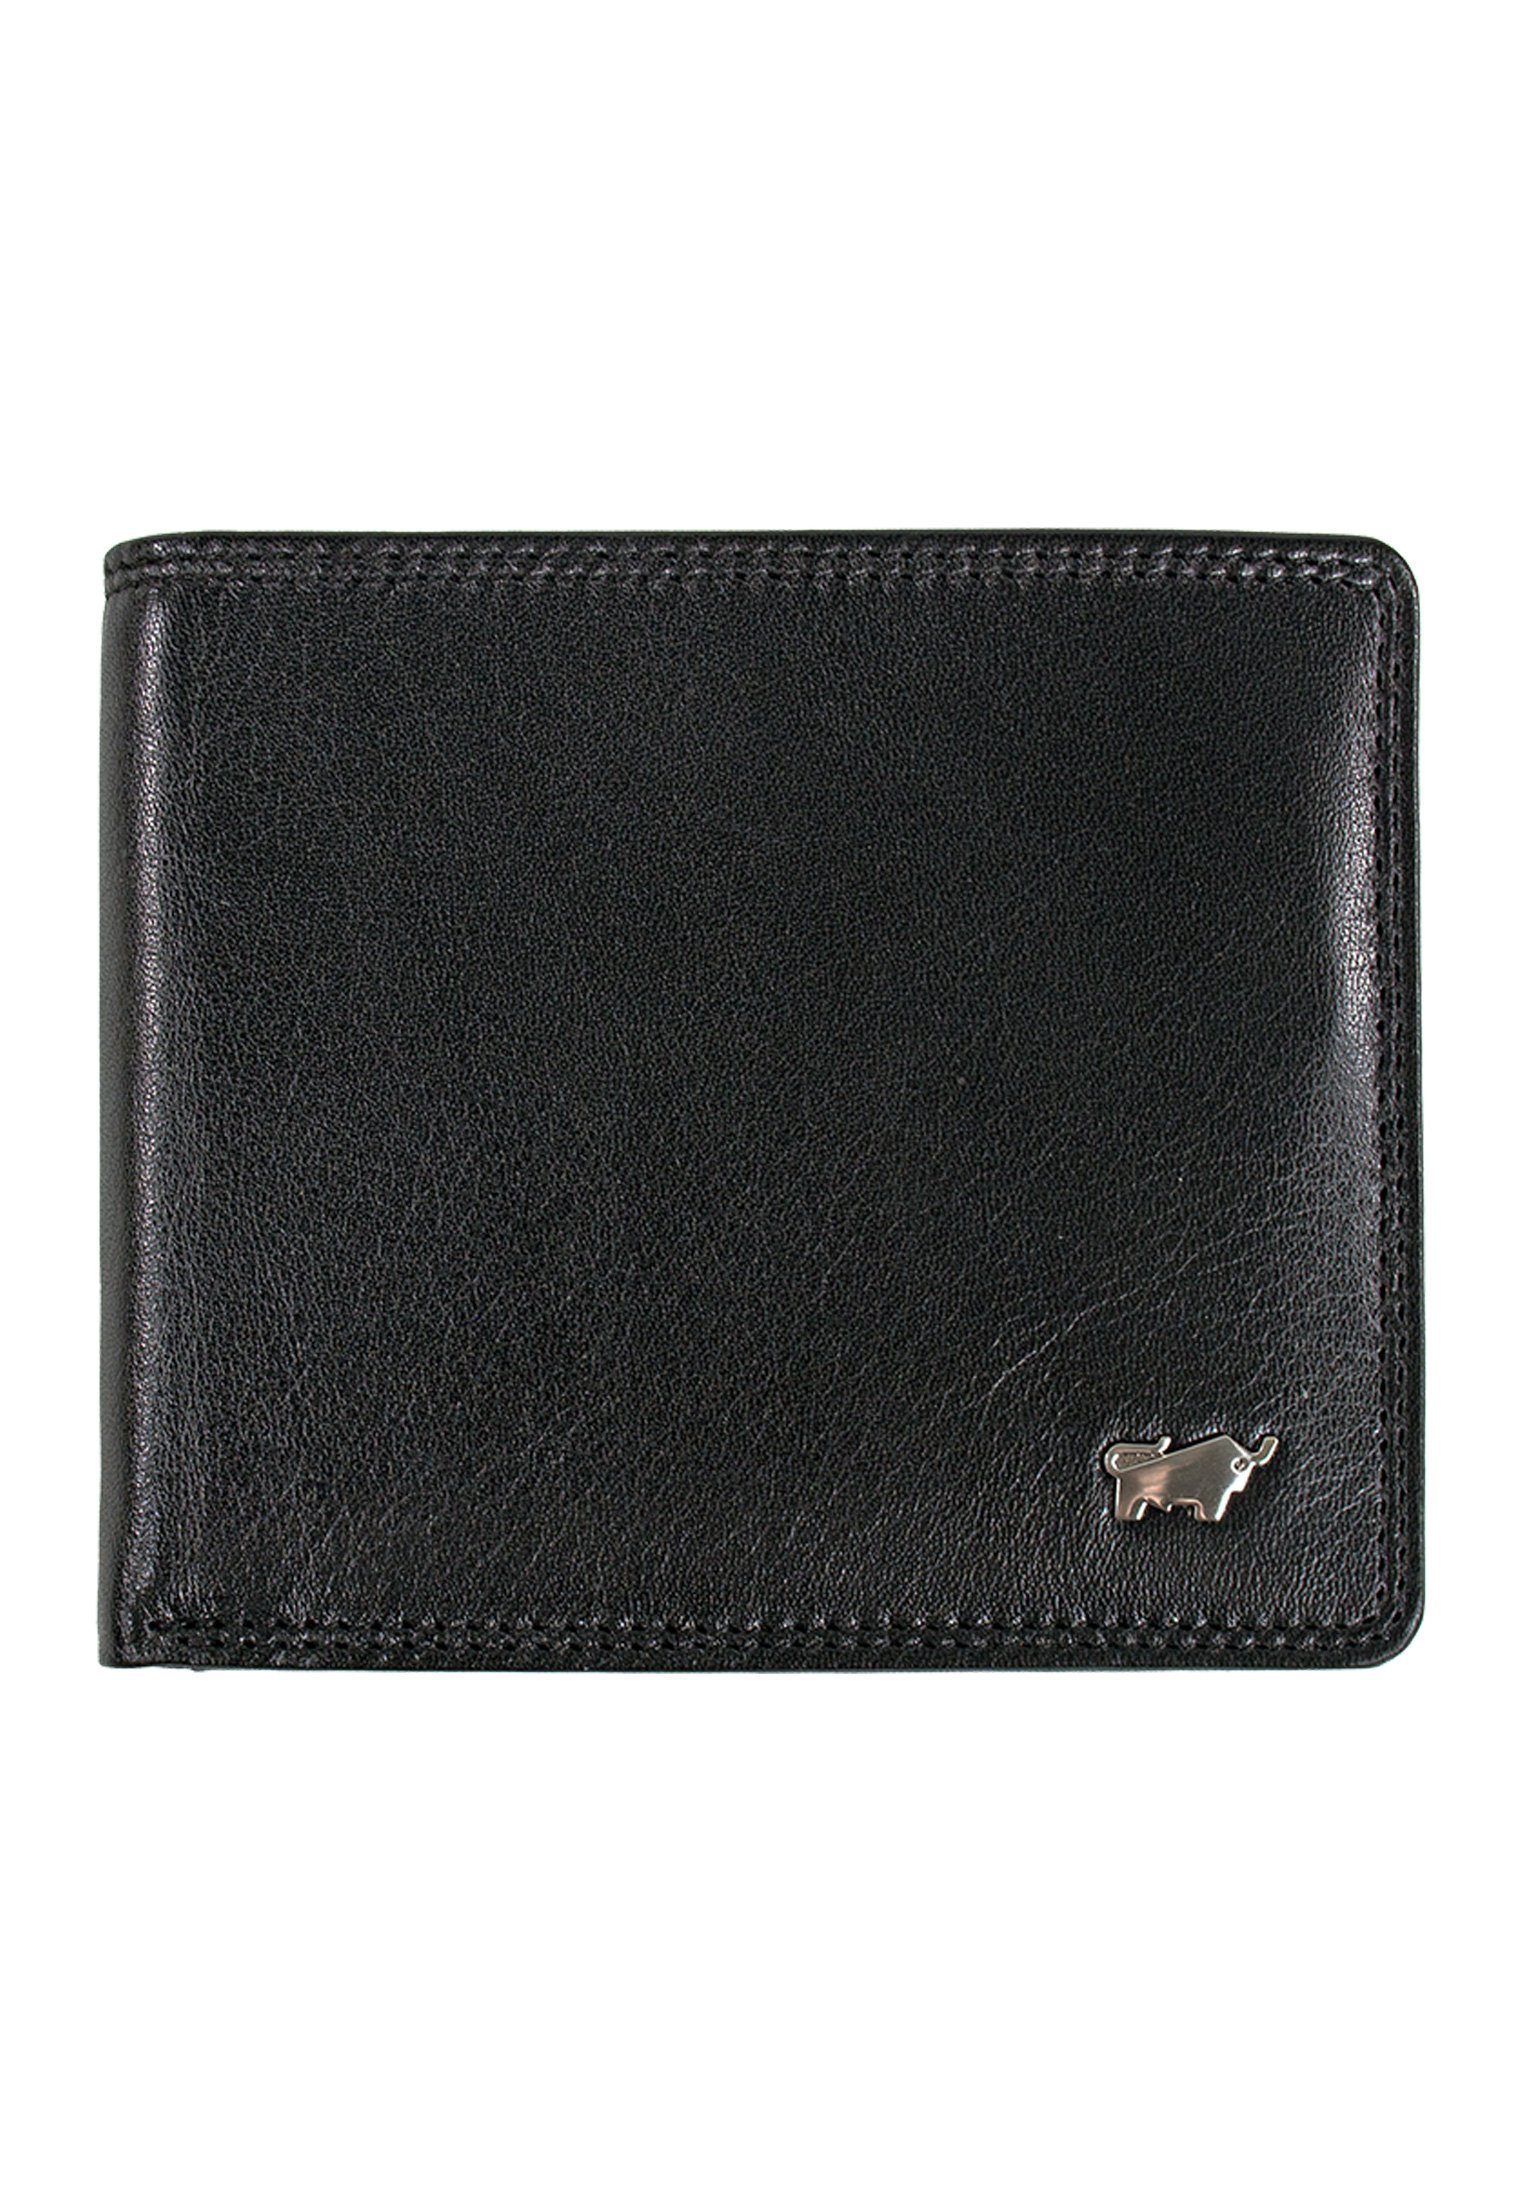 Braun Büffel Geldbörse GOLF SECURE Kartenbörse 8CS schwarz, mit 8 Kartenfächern und RFID-Schutz